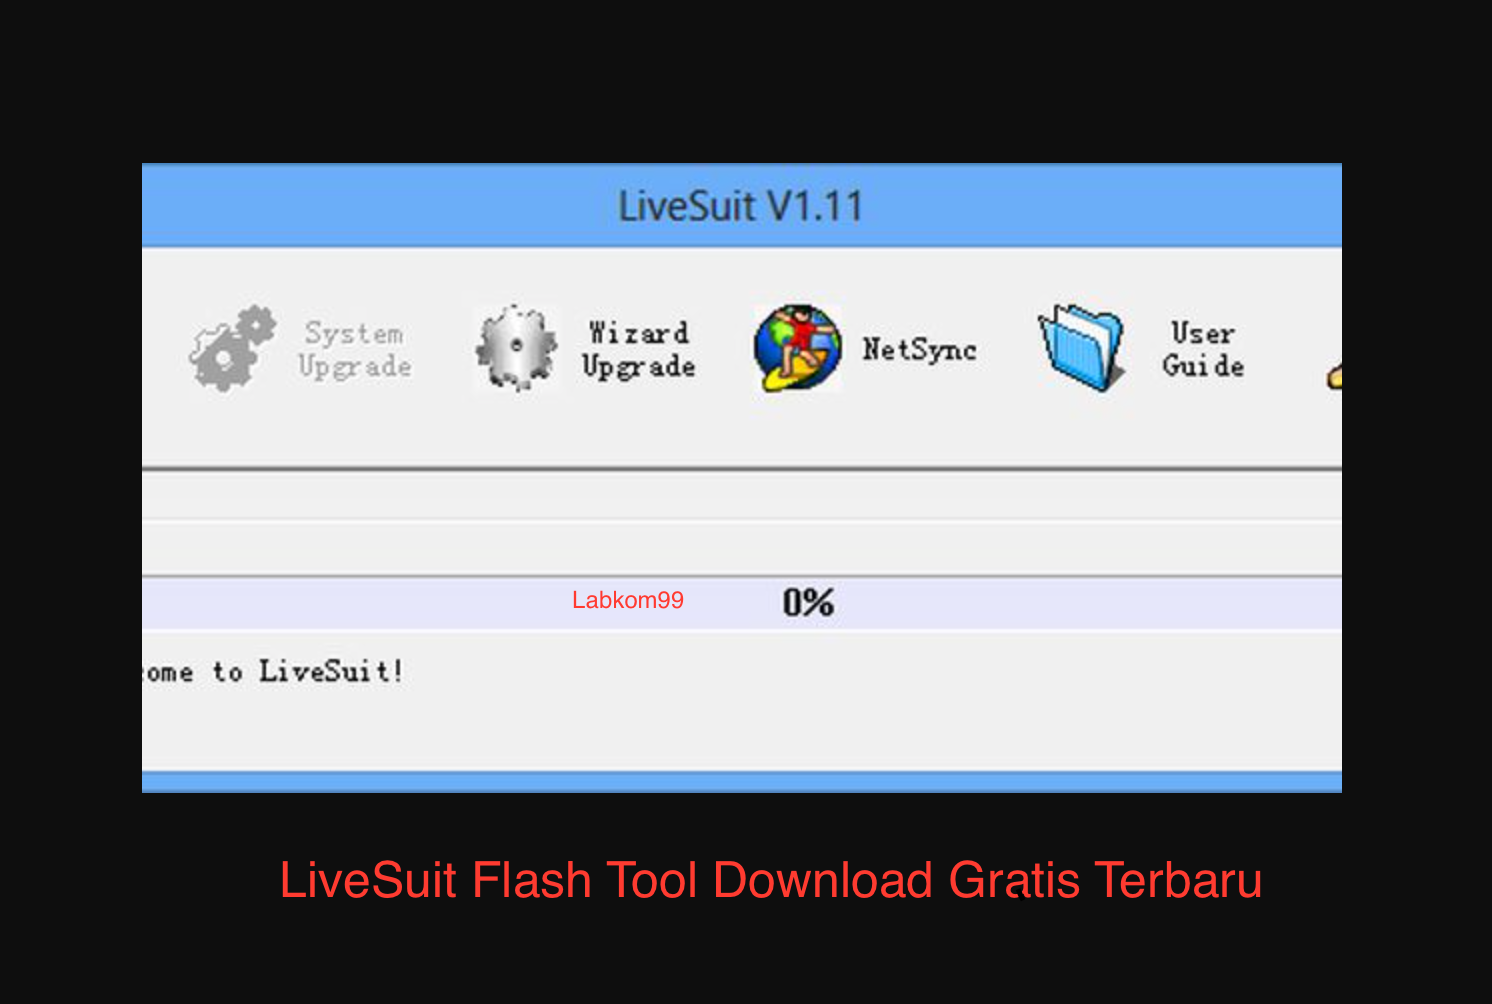 LiveSuit Flash Tool Download Gratis Terbaru